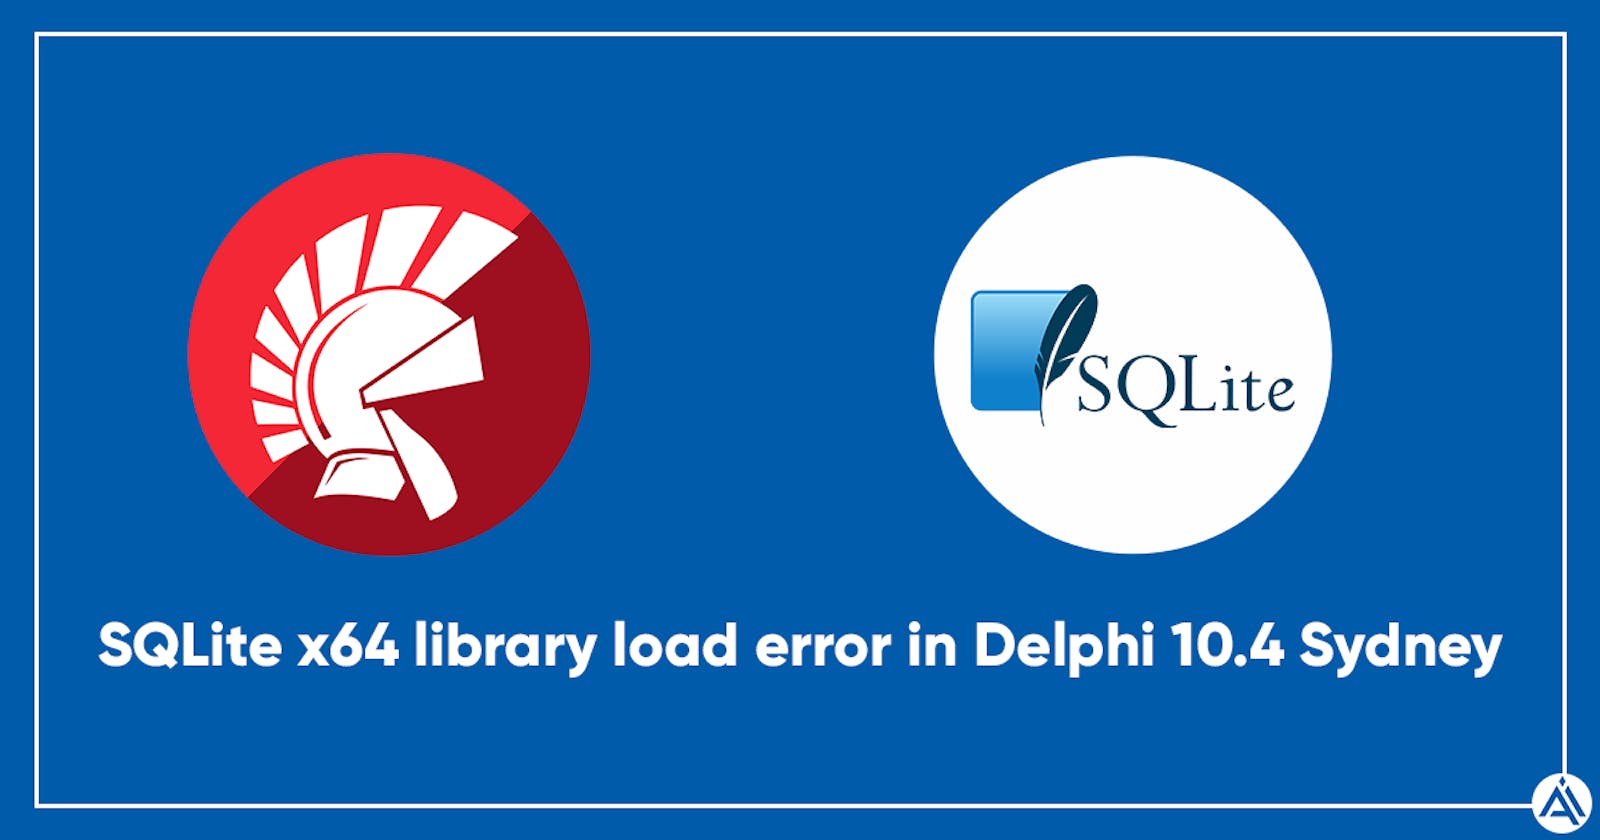 Delphi 10.4.1 Sydney ile Android 64-Bit uygulamada SQLite Hatası ve Çözümü